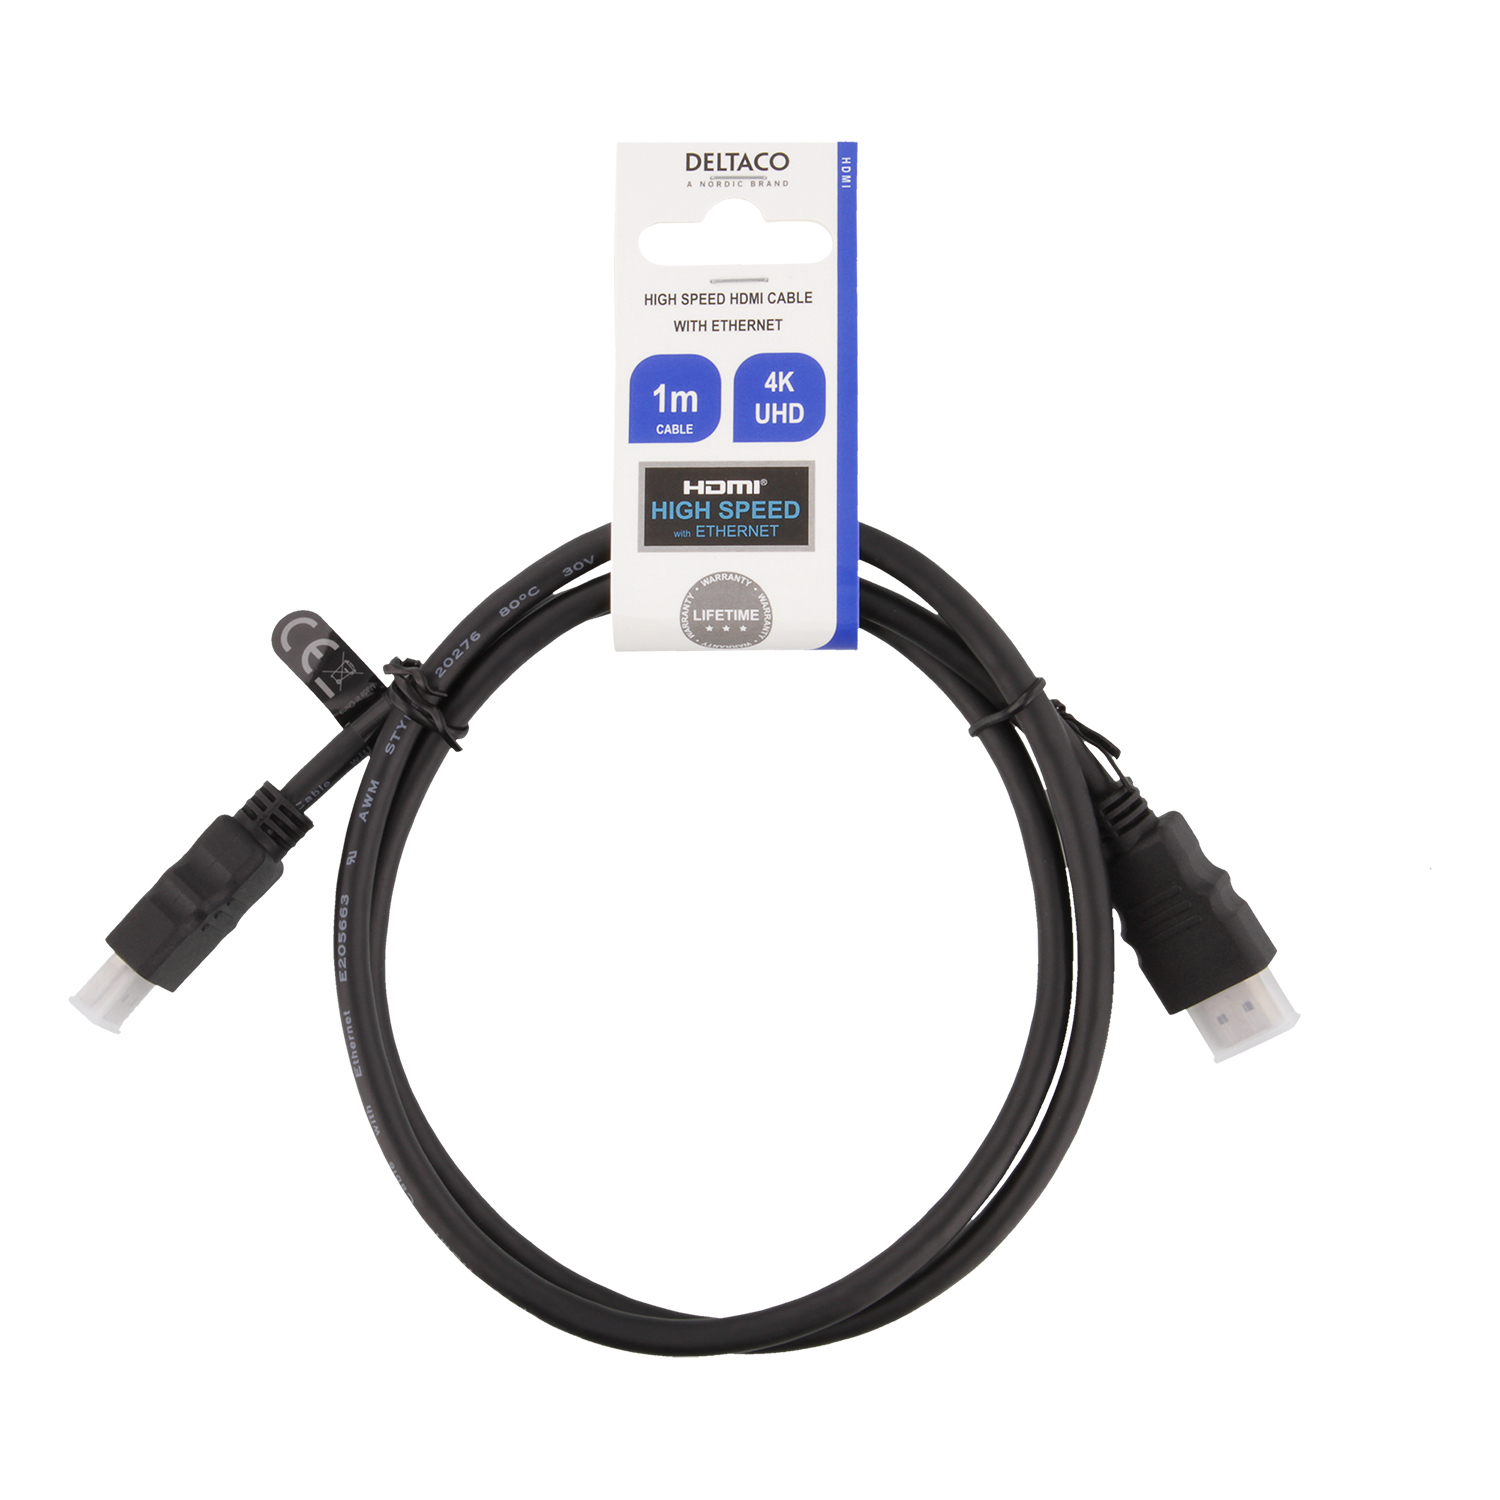 Deltaco HDMI kabel, CCS, High Speed, Ethernet, 1m, svart